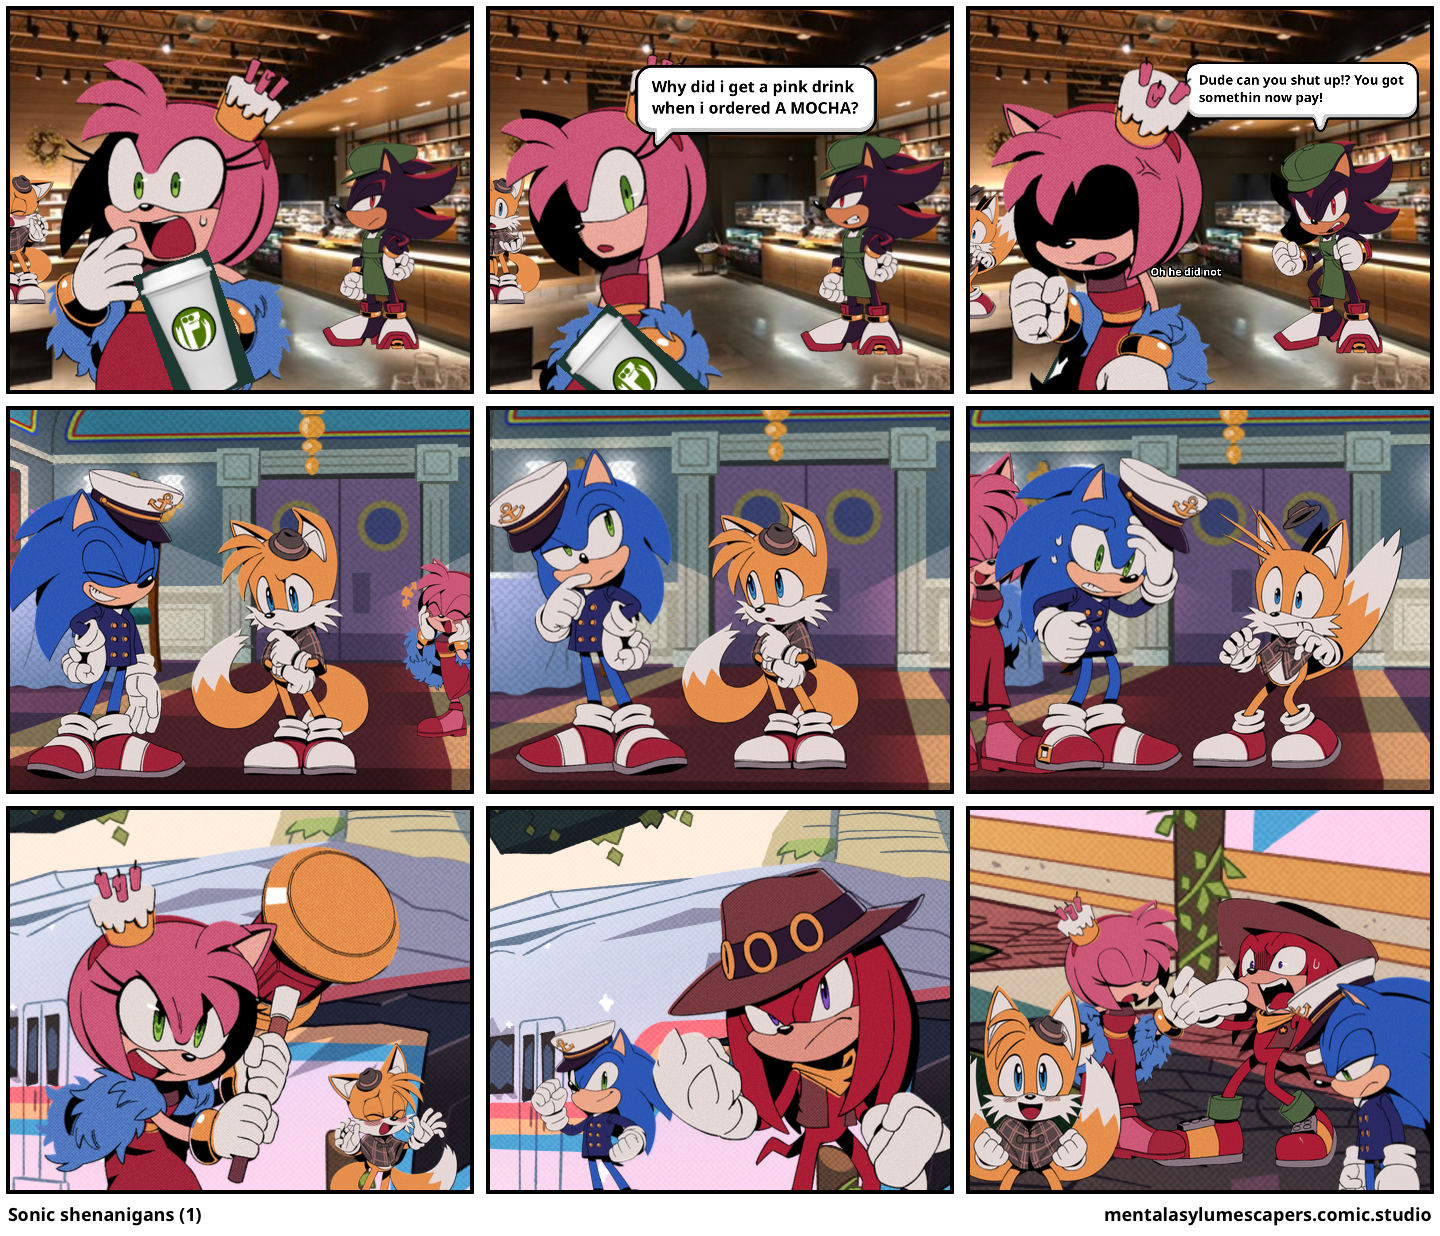 Sonic shenanigans (1)